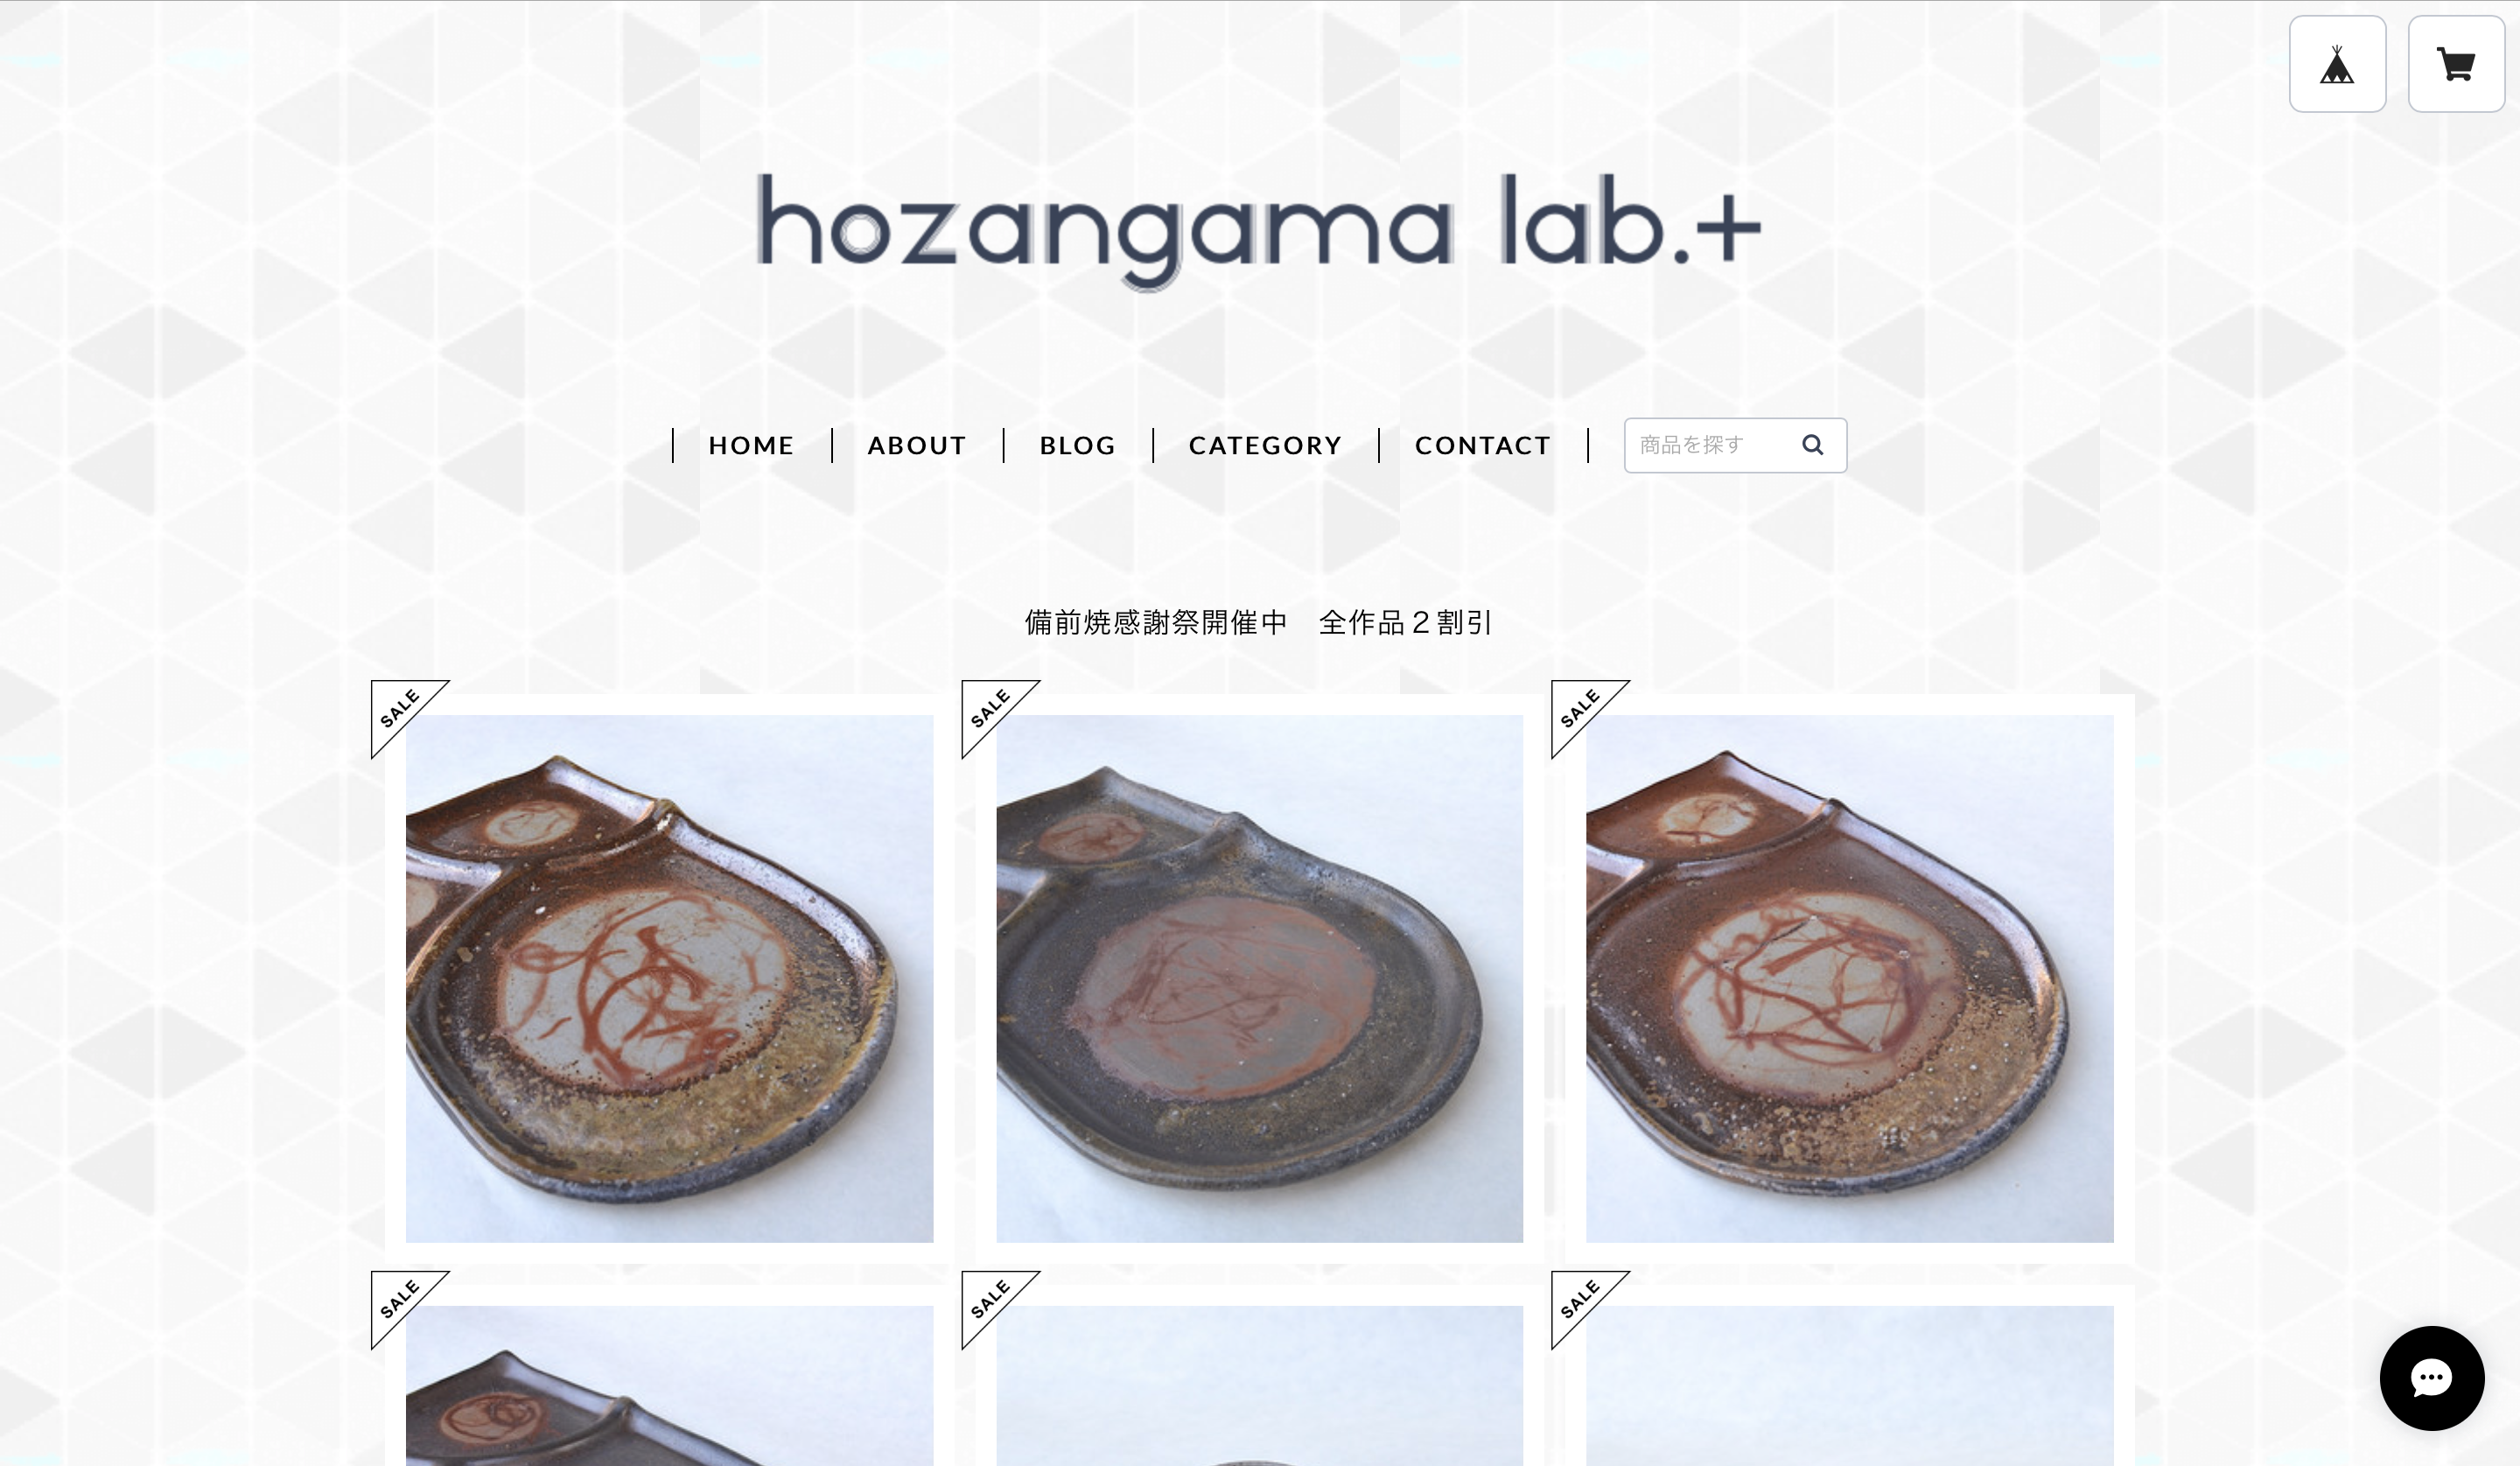 オンラインショップ「hozangama lab.+」ようやくのオープン